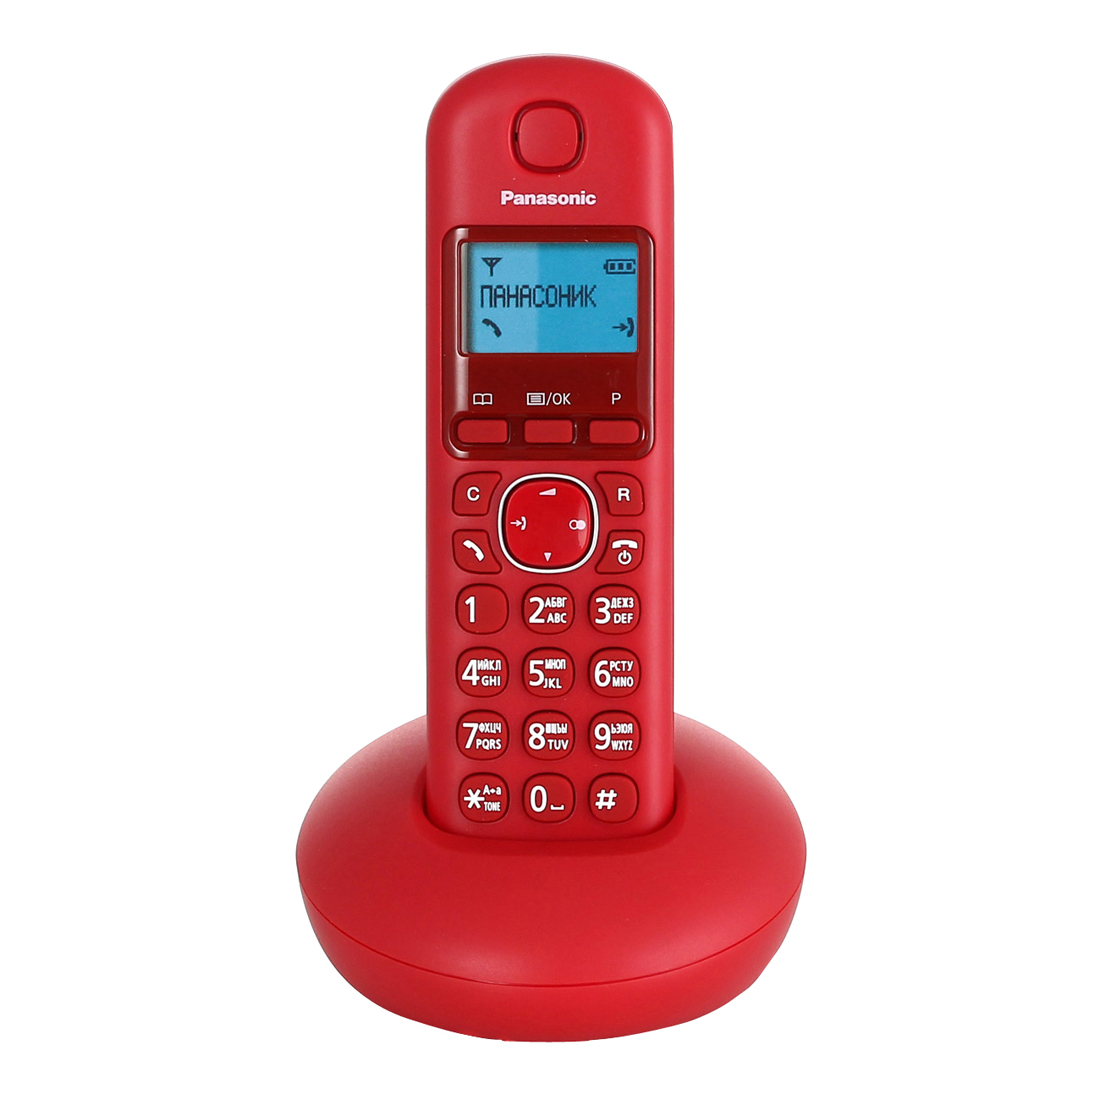 Телефоны стационарные радио. Панасоник 210 радиотелефон красный. Panasonic KX-tgb210. Panasonic KX-tgb210rur. Телефон DECT Panasonic KX-tgb210rur.